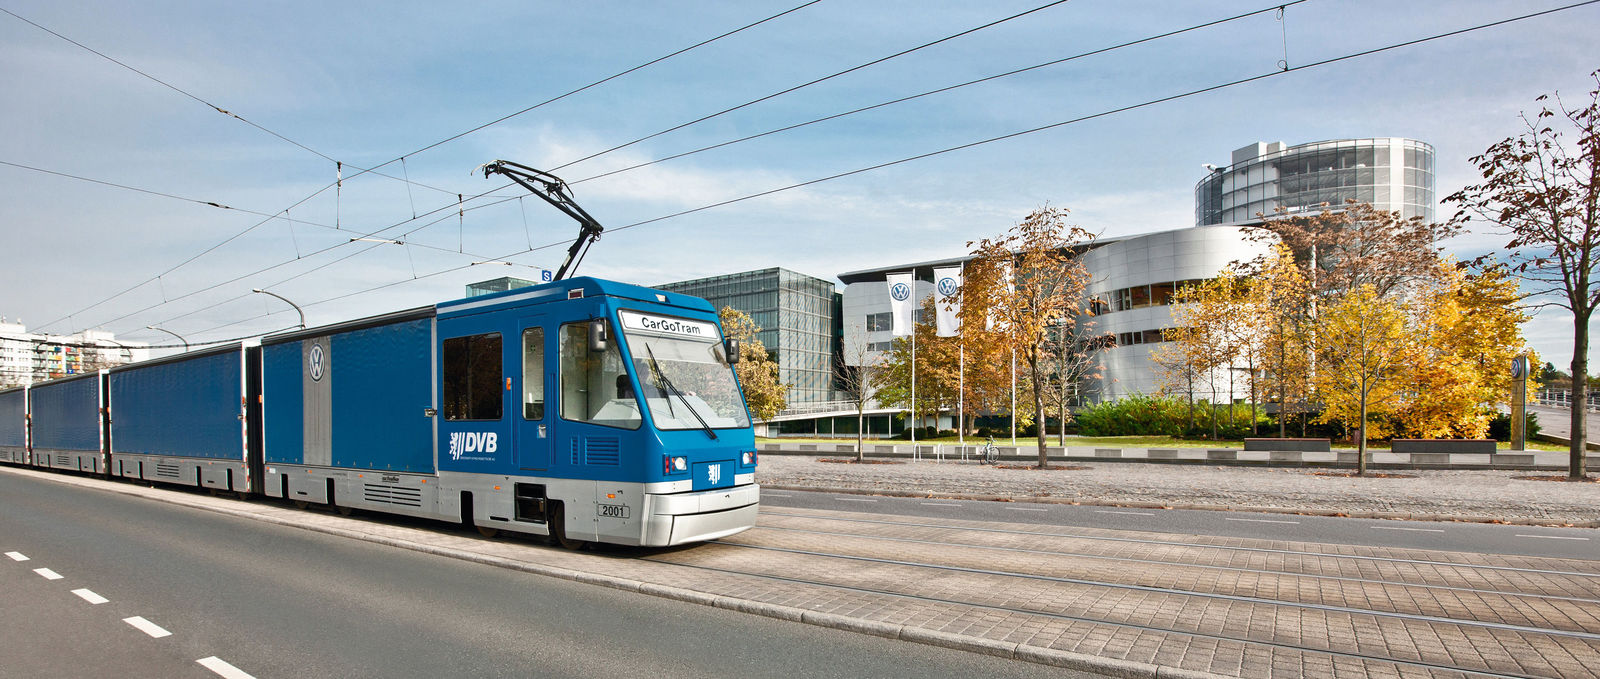 Die Cargotram / Strassenbahn der DVB vor der Glaesernen Manufaktur von Volkswagen am 27.10.2010 in Dresden. Foto: Oliver Killig